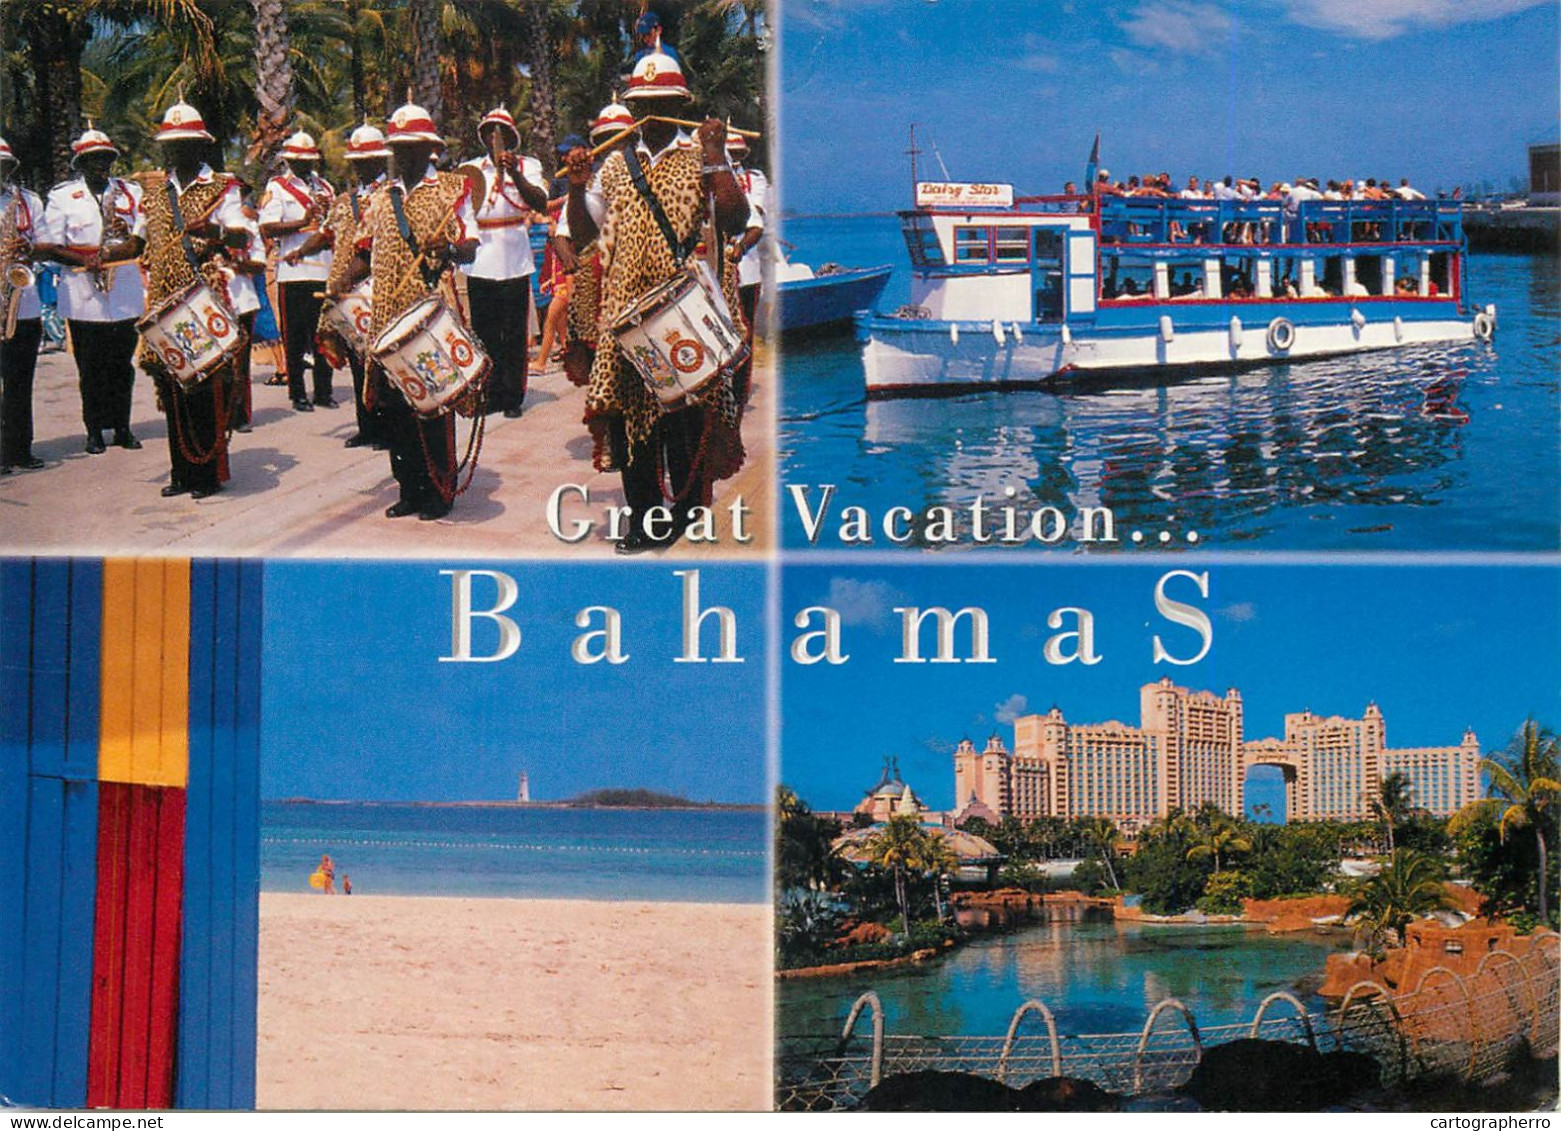 Postcard Bahamas Great Vacation Advertising Band Parade - Bahamas